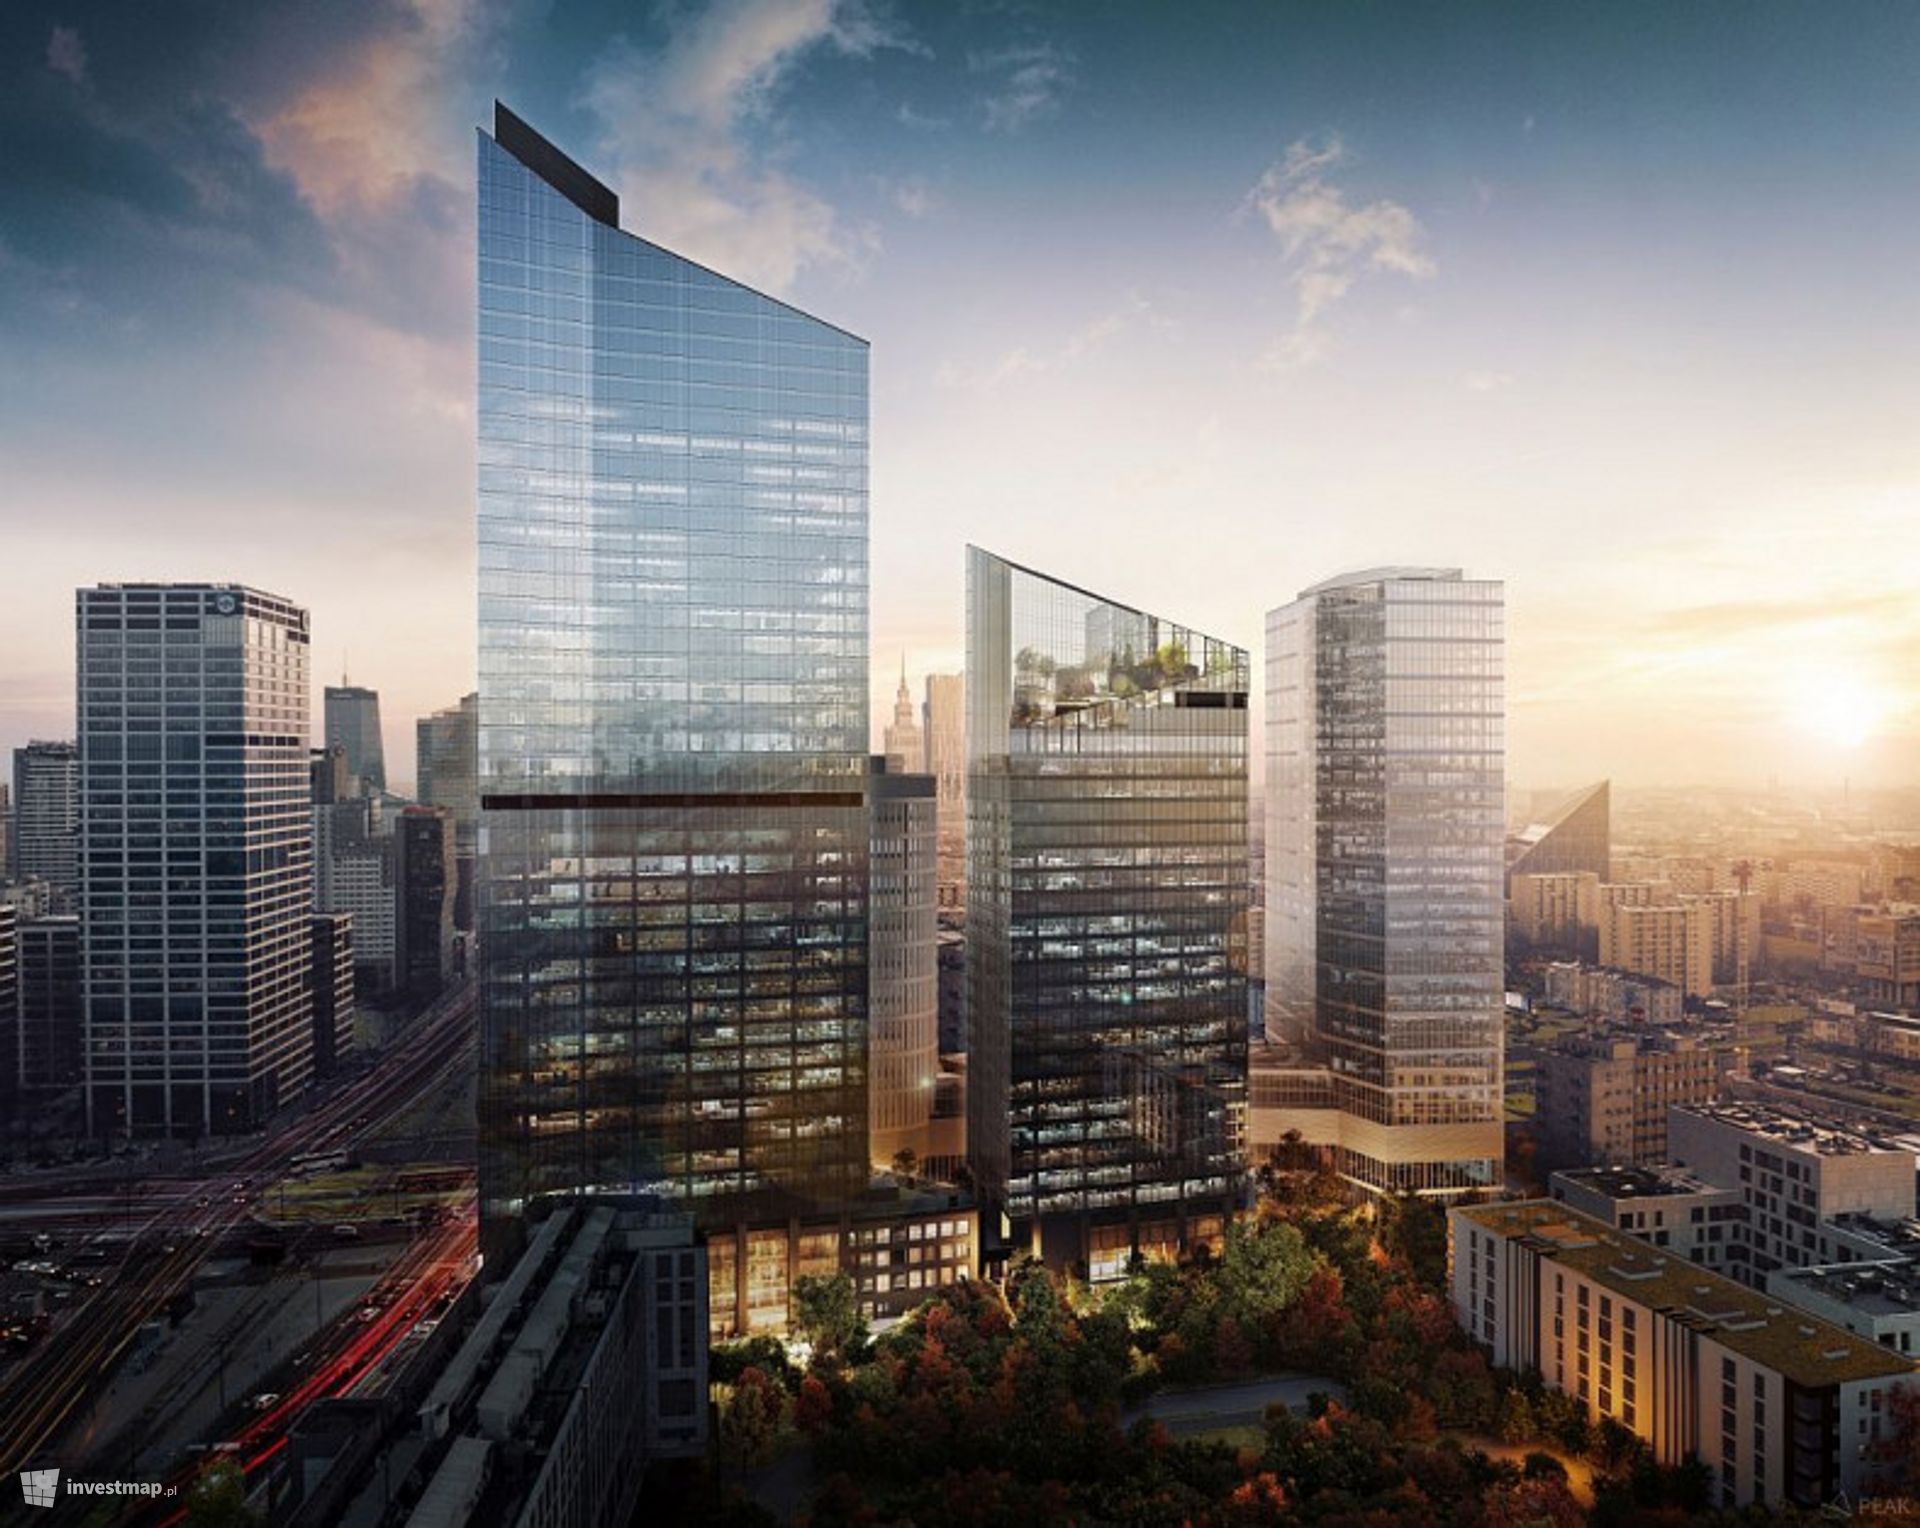 W centrum Warszawy powstaje nowy, 130-metrowy biurowiec 